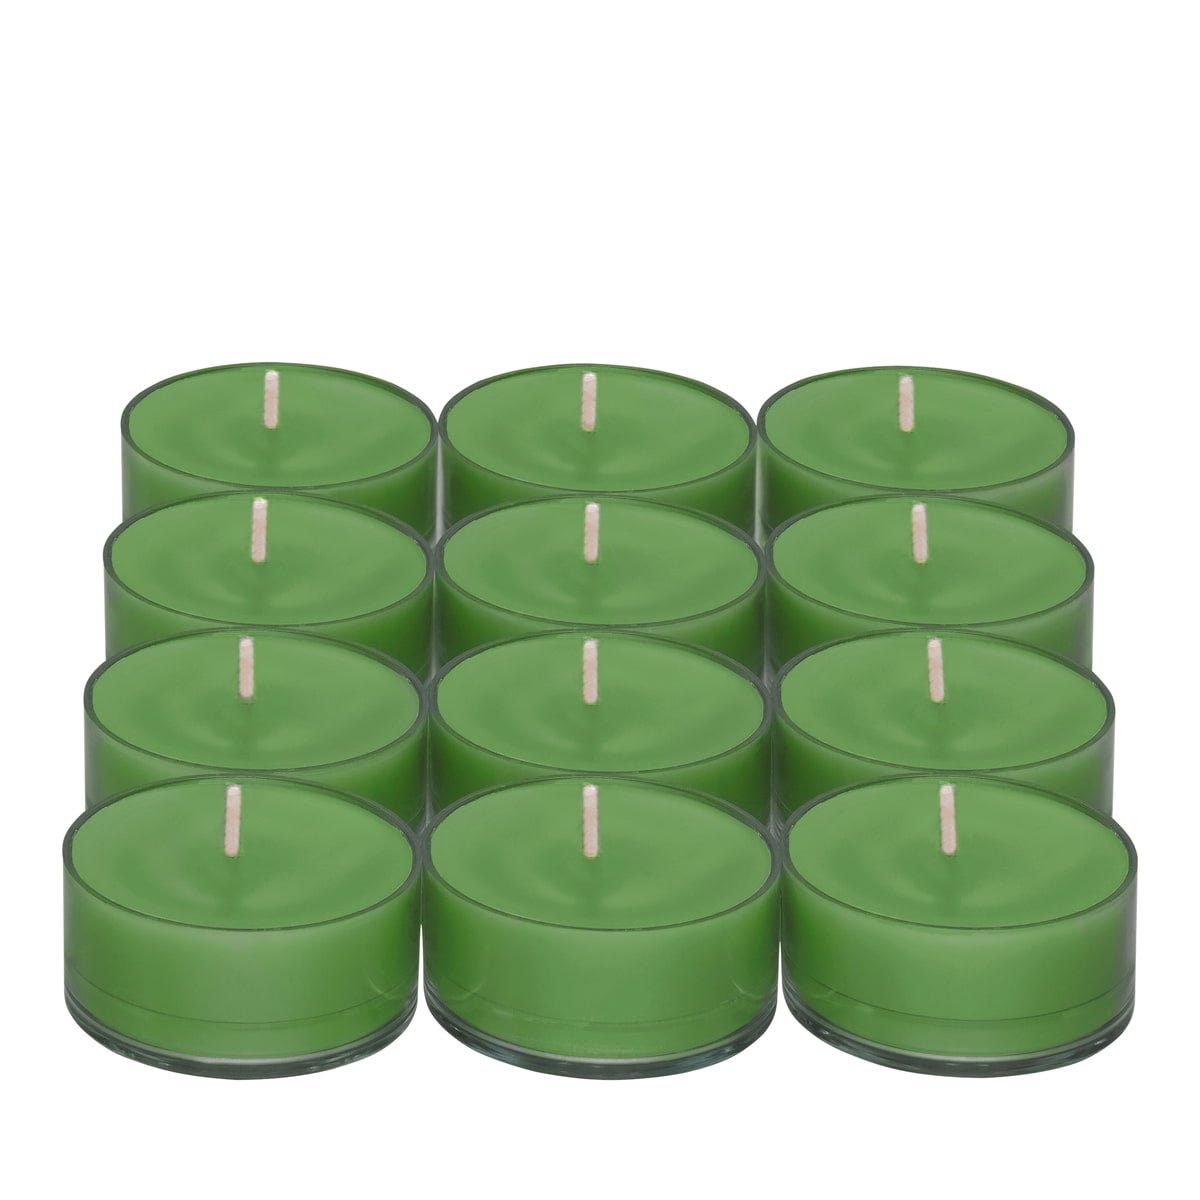 Garden Mint Universal Tealight Candles